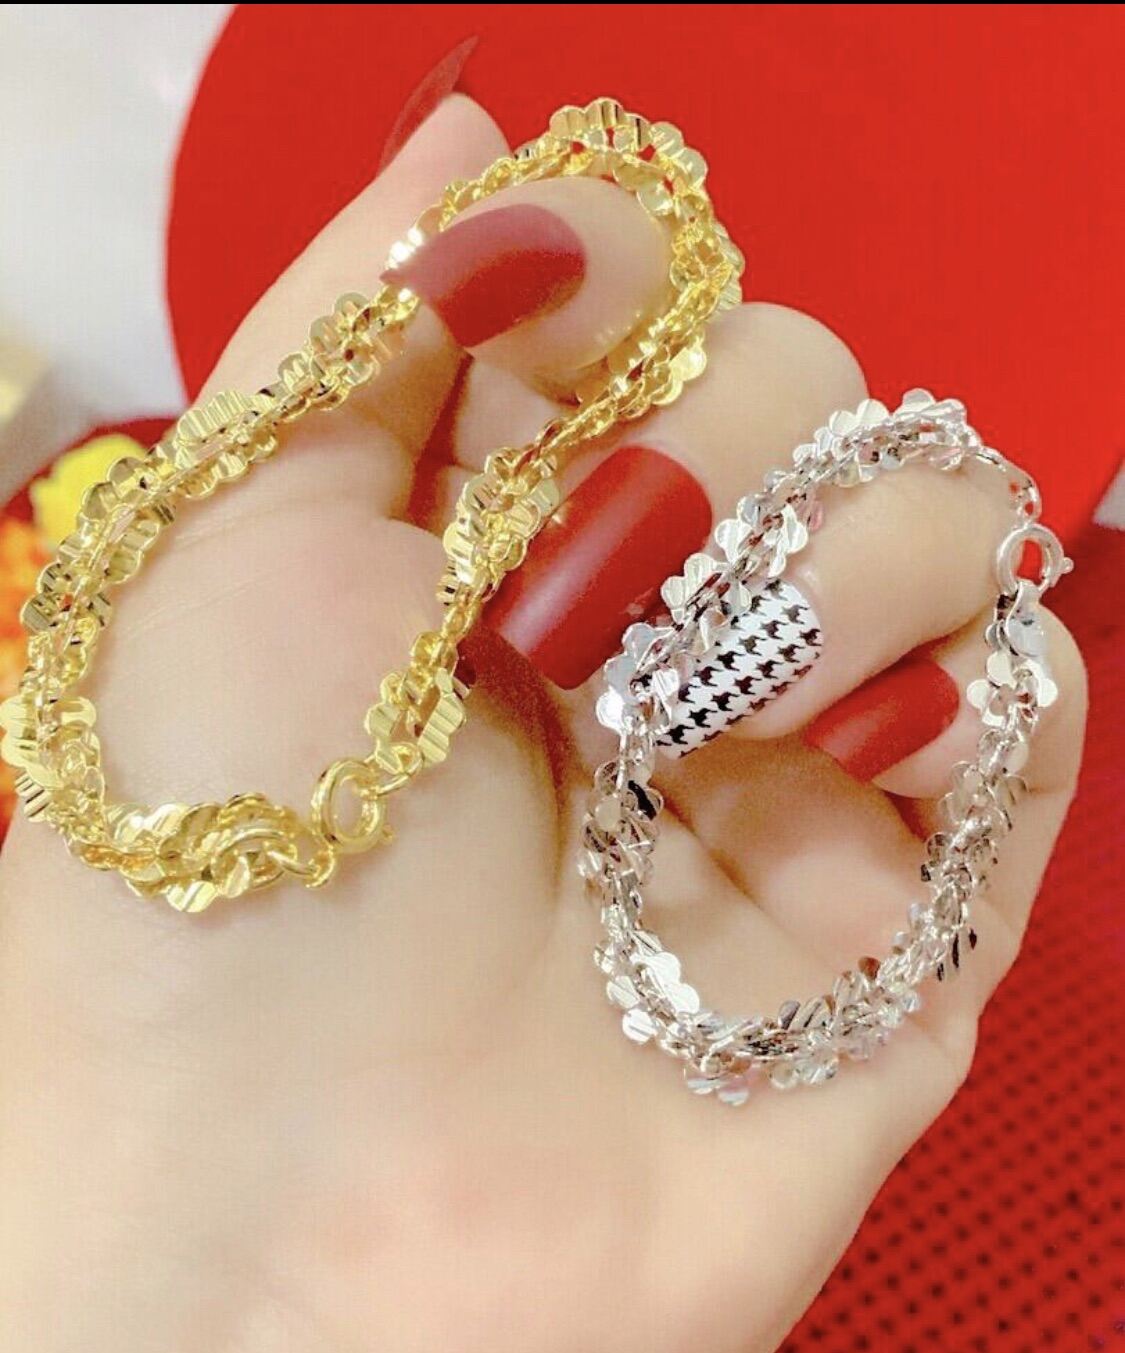 Lắc tay nữ vàng xoắn là món quà tuyệt vời dành tặng cho phụ nữ của bạn. Sự kết hợp giữa chất liệu vàng 18k và thiết kế xoắn nhẹ nhàng sẽ giúp nàng tự tin hơn trong mọi dịp. Hãy để đồng hồ lắc tay nữ vàng xoắn trở thành món trang sức thể hiện phong cách thời trang của bạn.